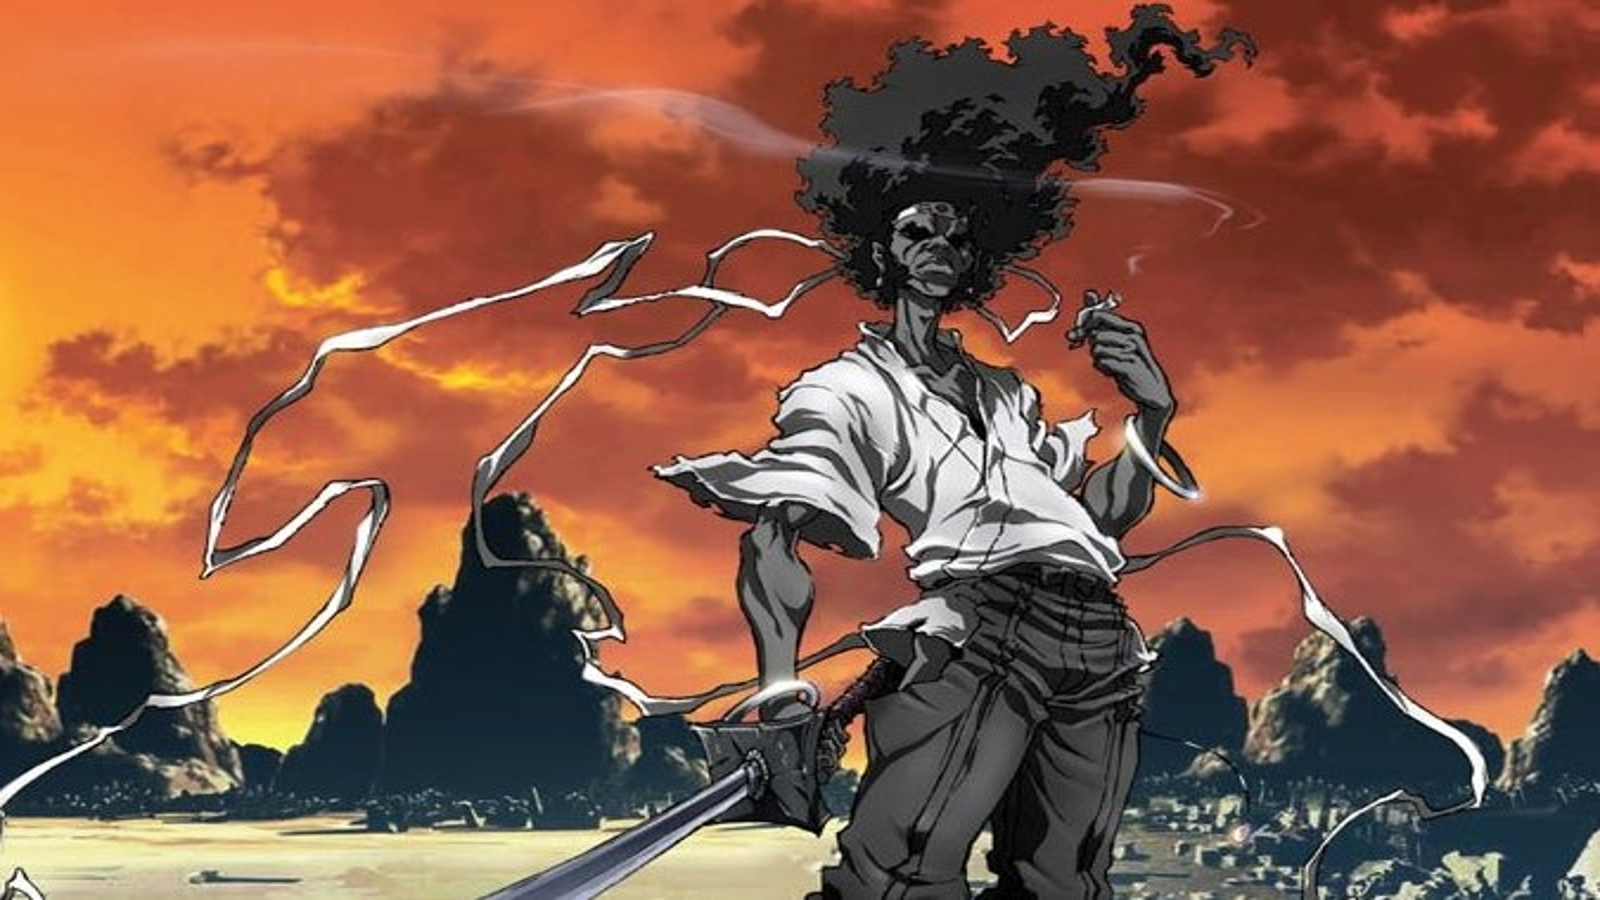 Assistir Afro Samurai - Episódio 002 Online em HD - AnimesROLL